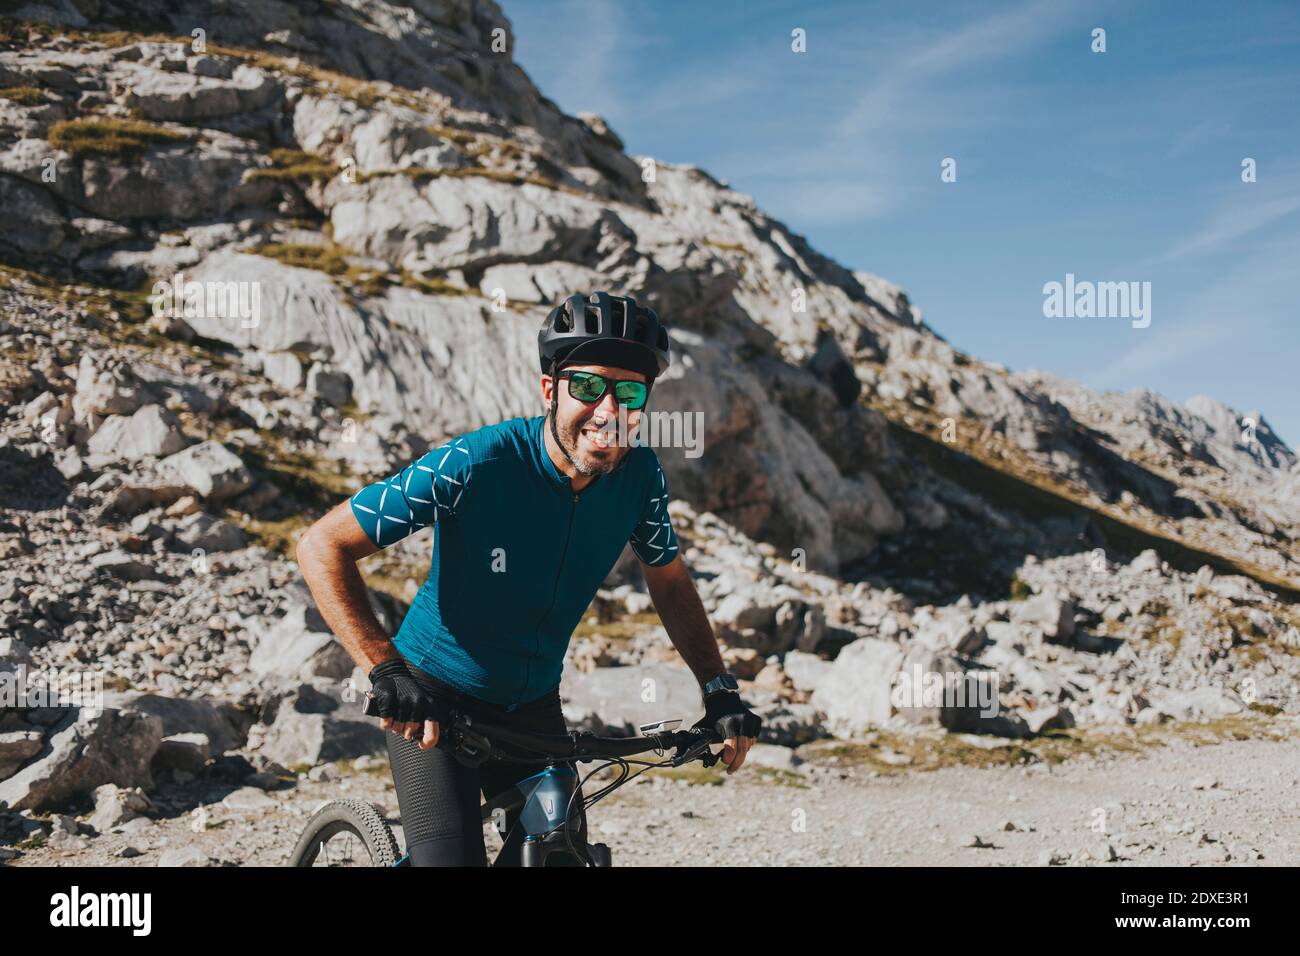 Allegro ciclista maschile in bicicletta contro la montagna durante la giornata di sole, Parco Nazionale Picos de Europa, Cantabria, Spagna Foto Stock